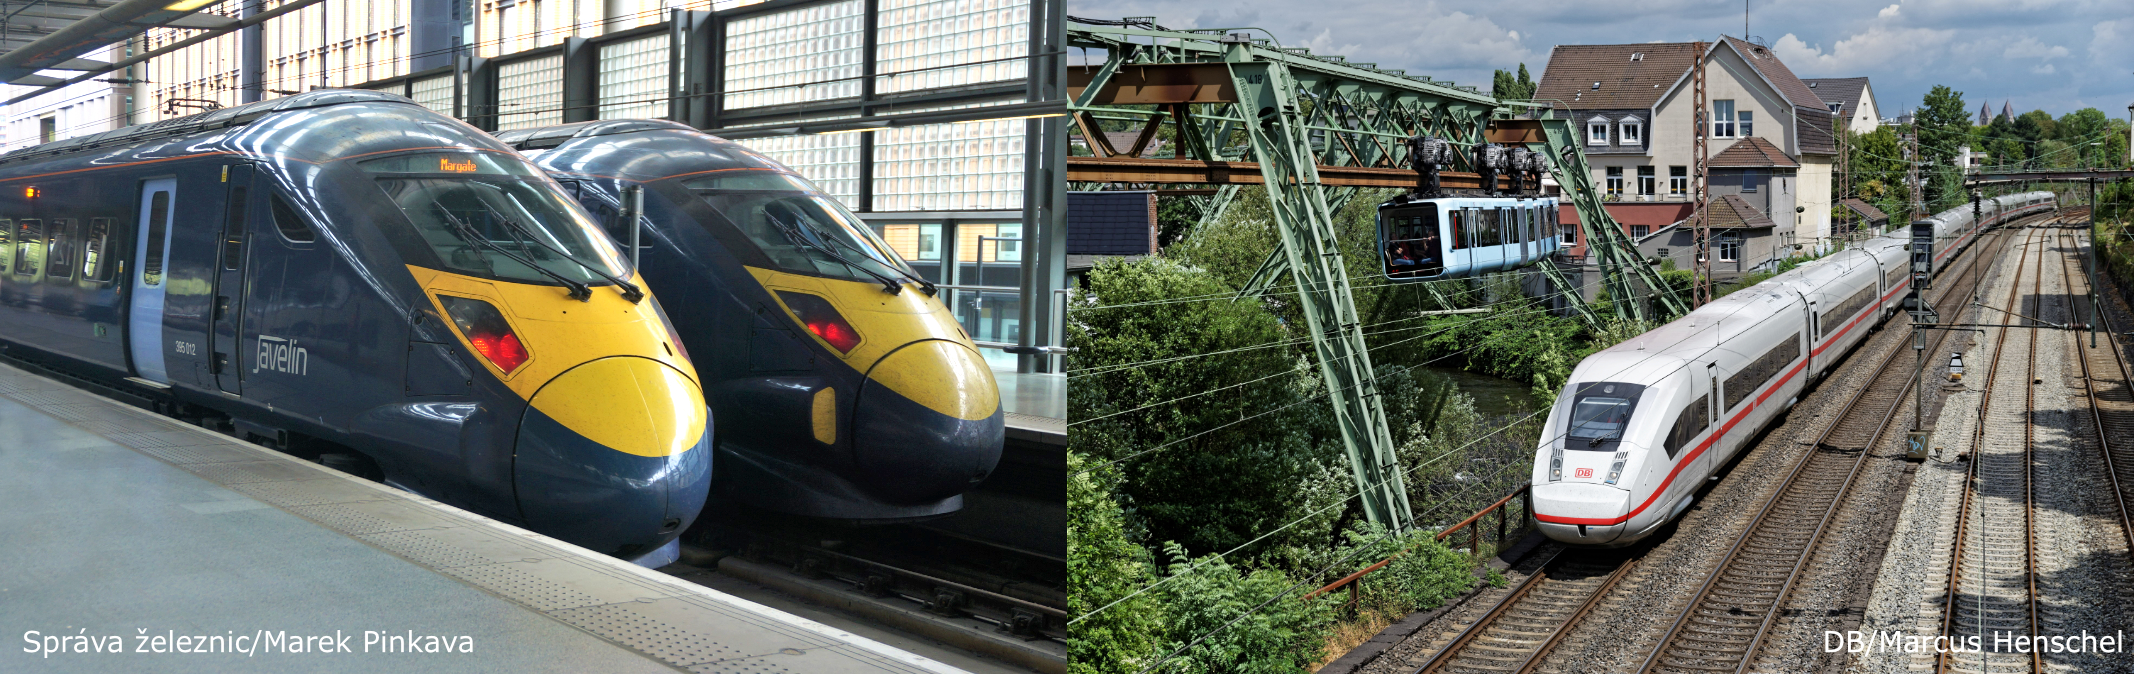 Vysokorychlostní vlaky z Británie a Německa